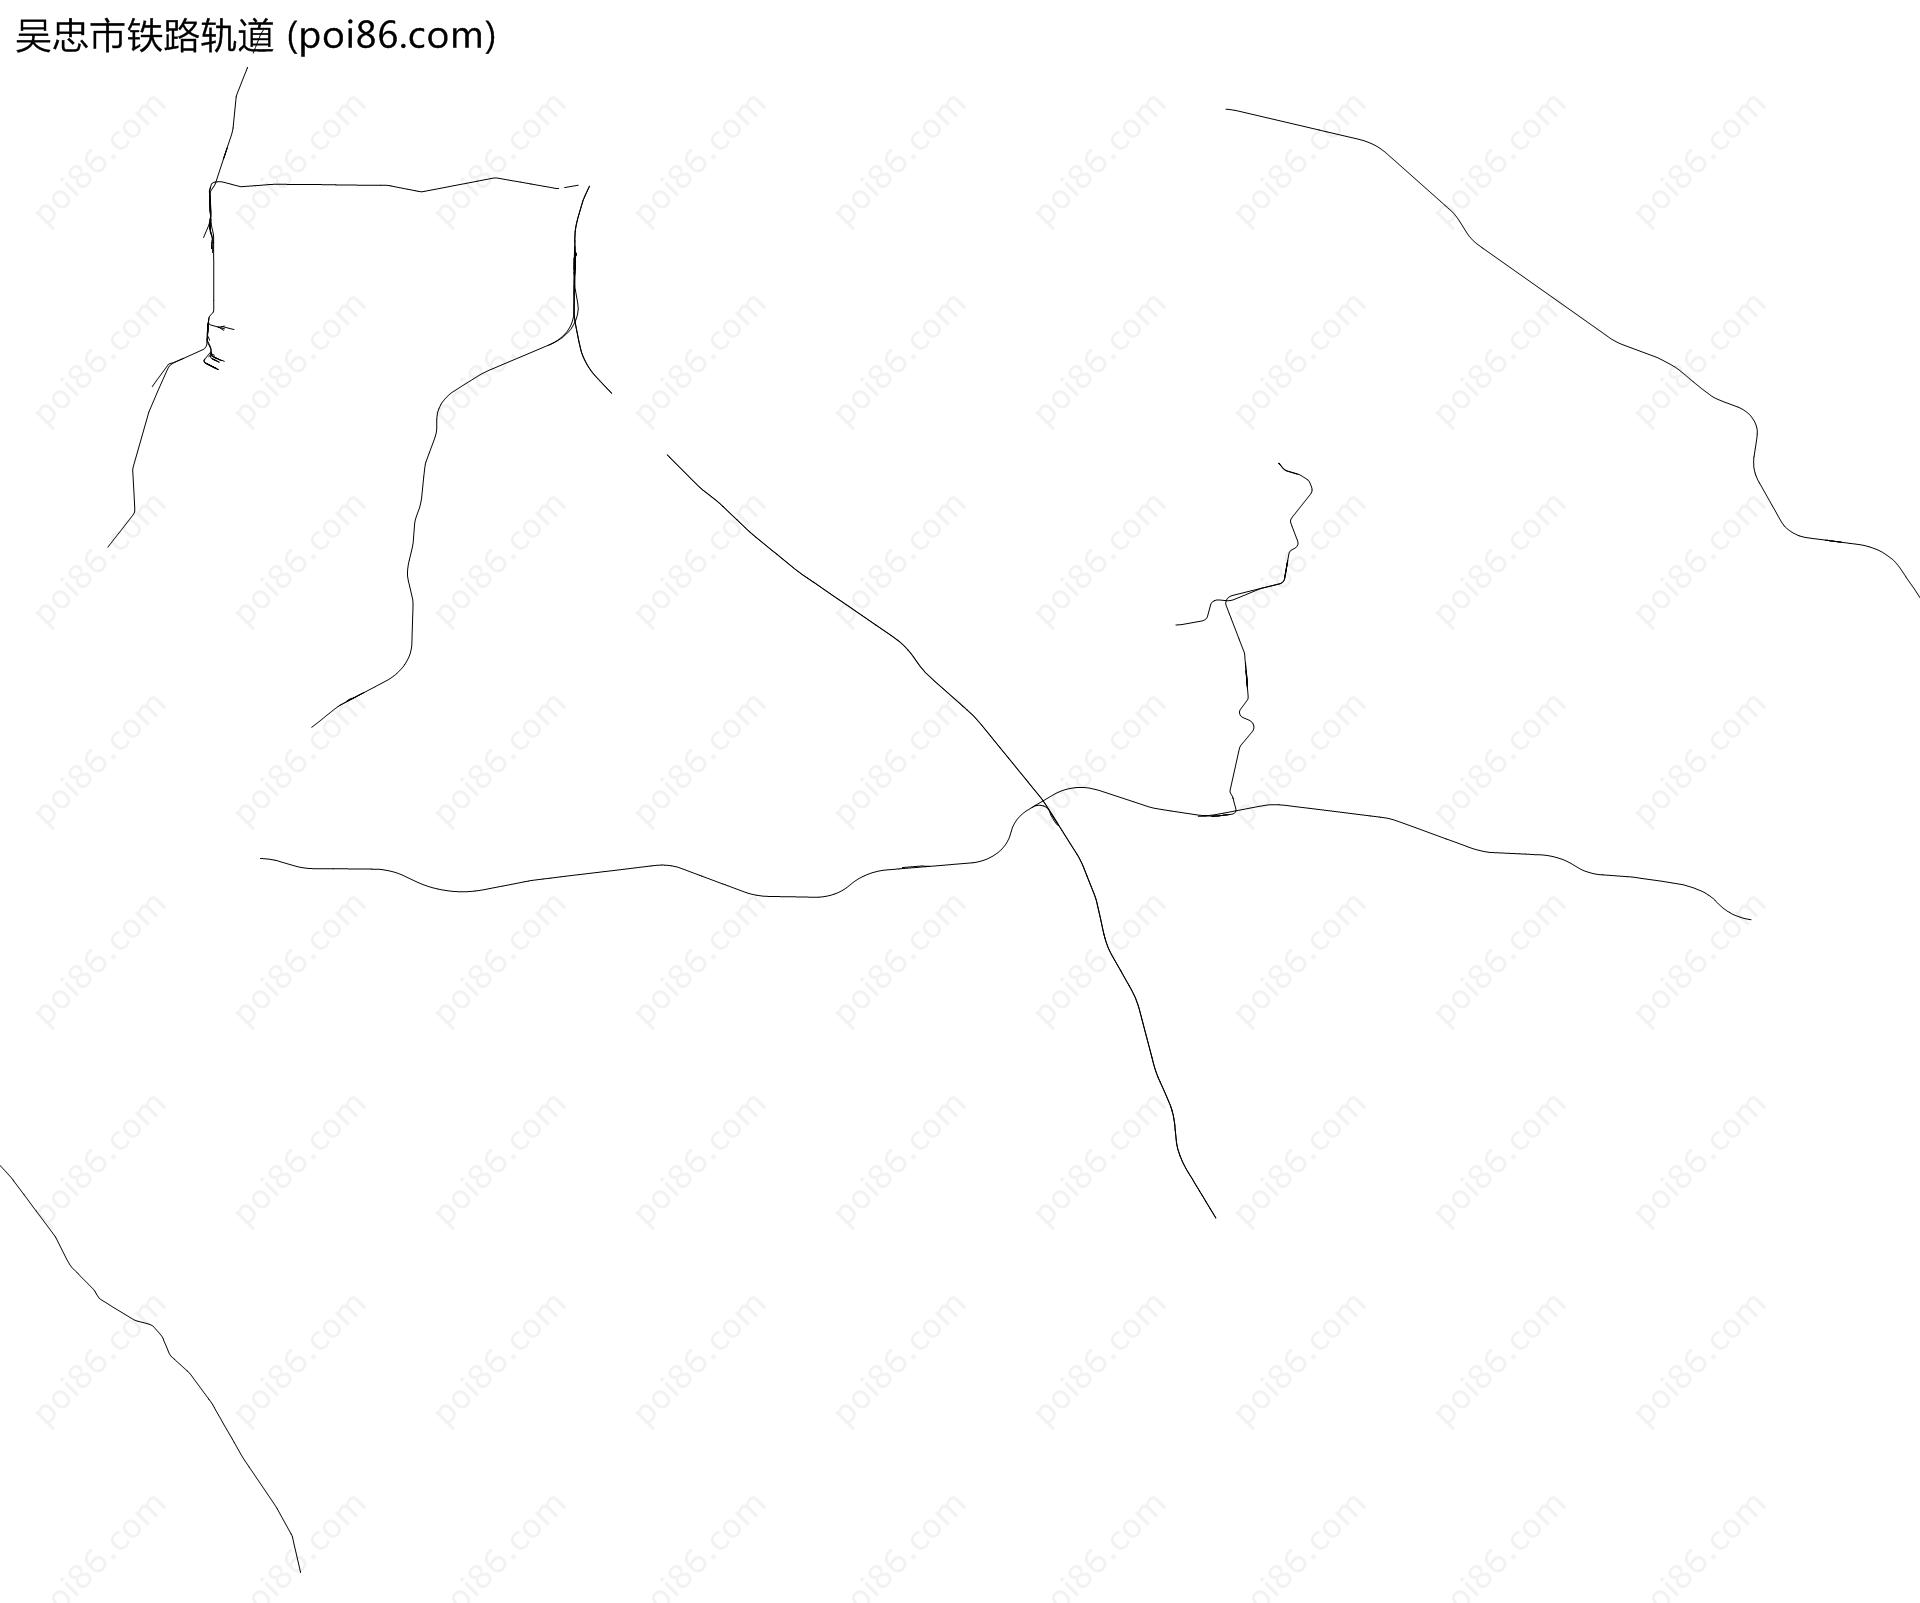 吴忠市铁路轨道地图